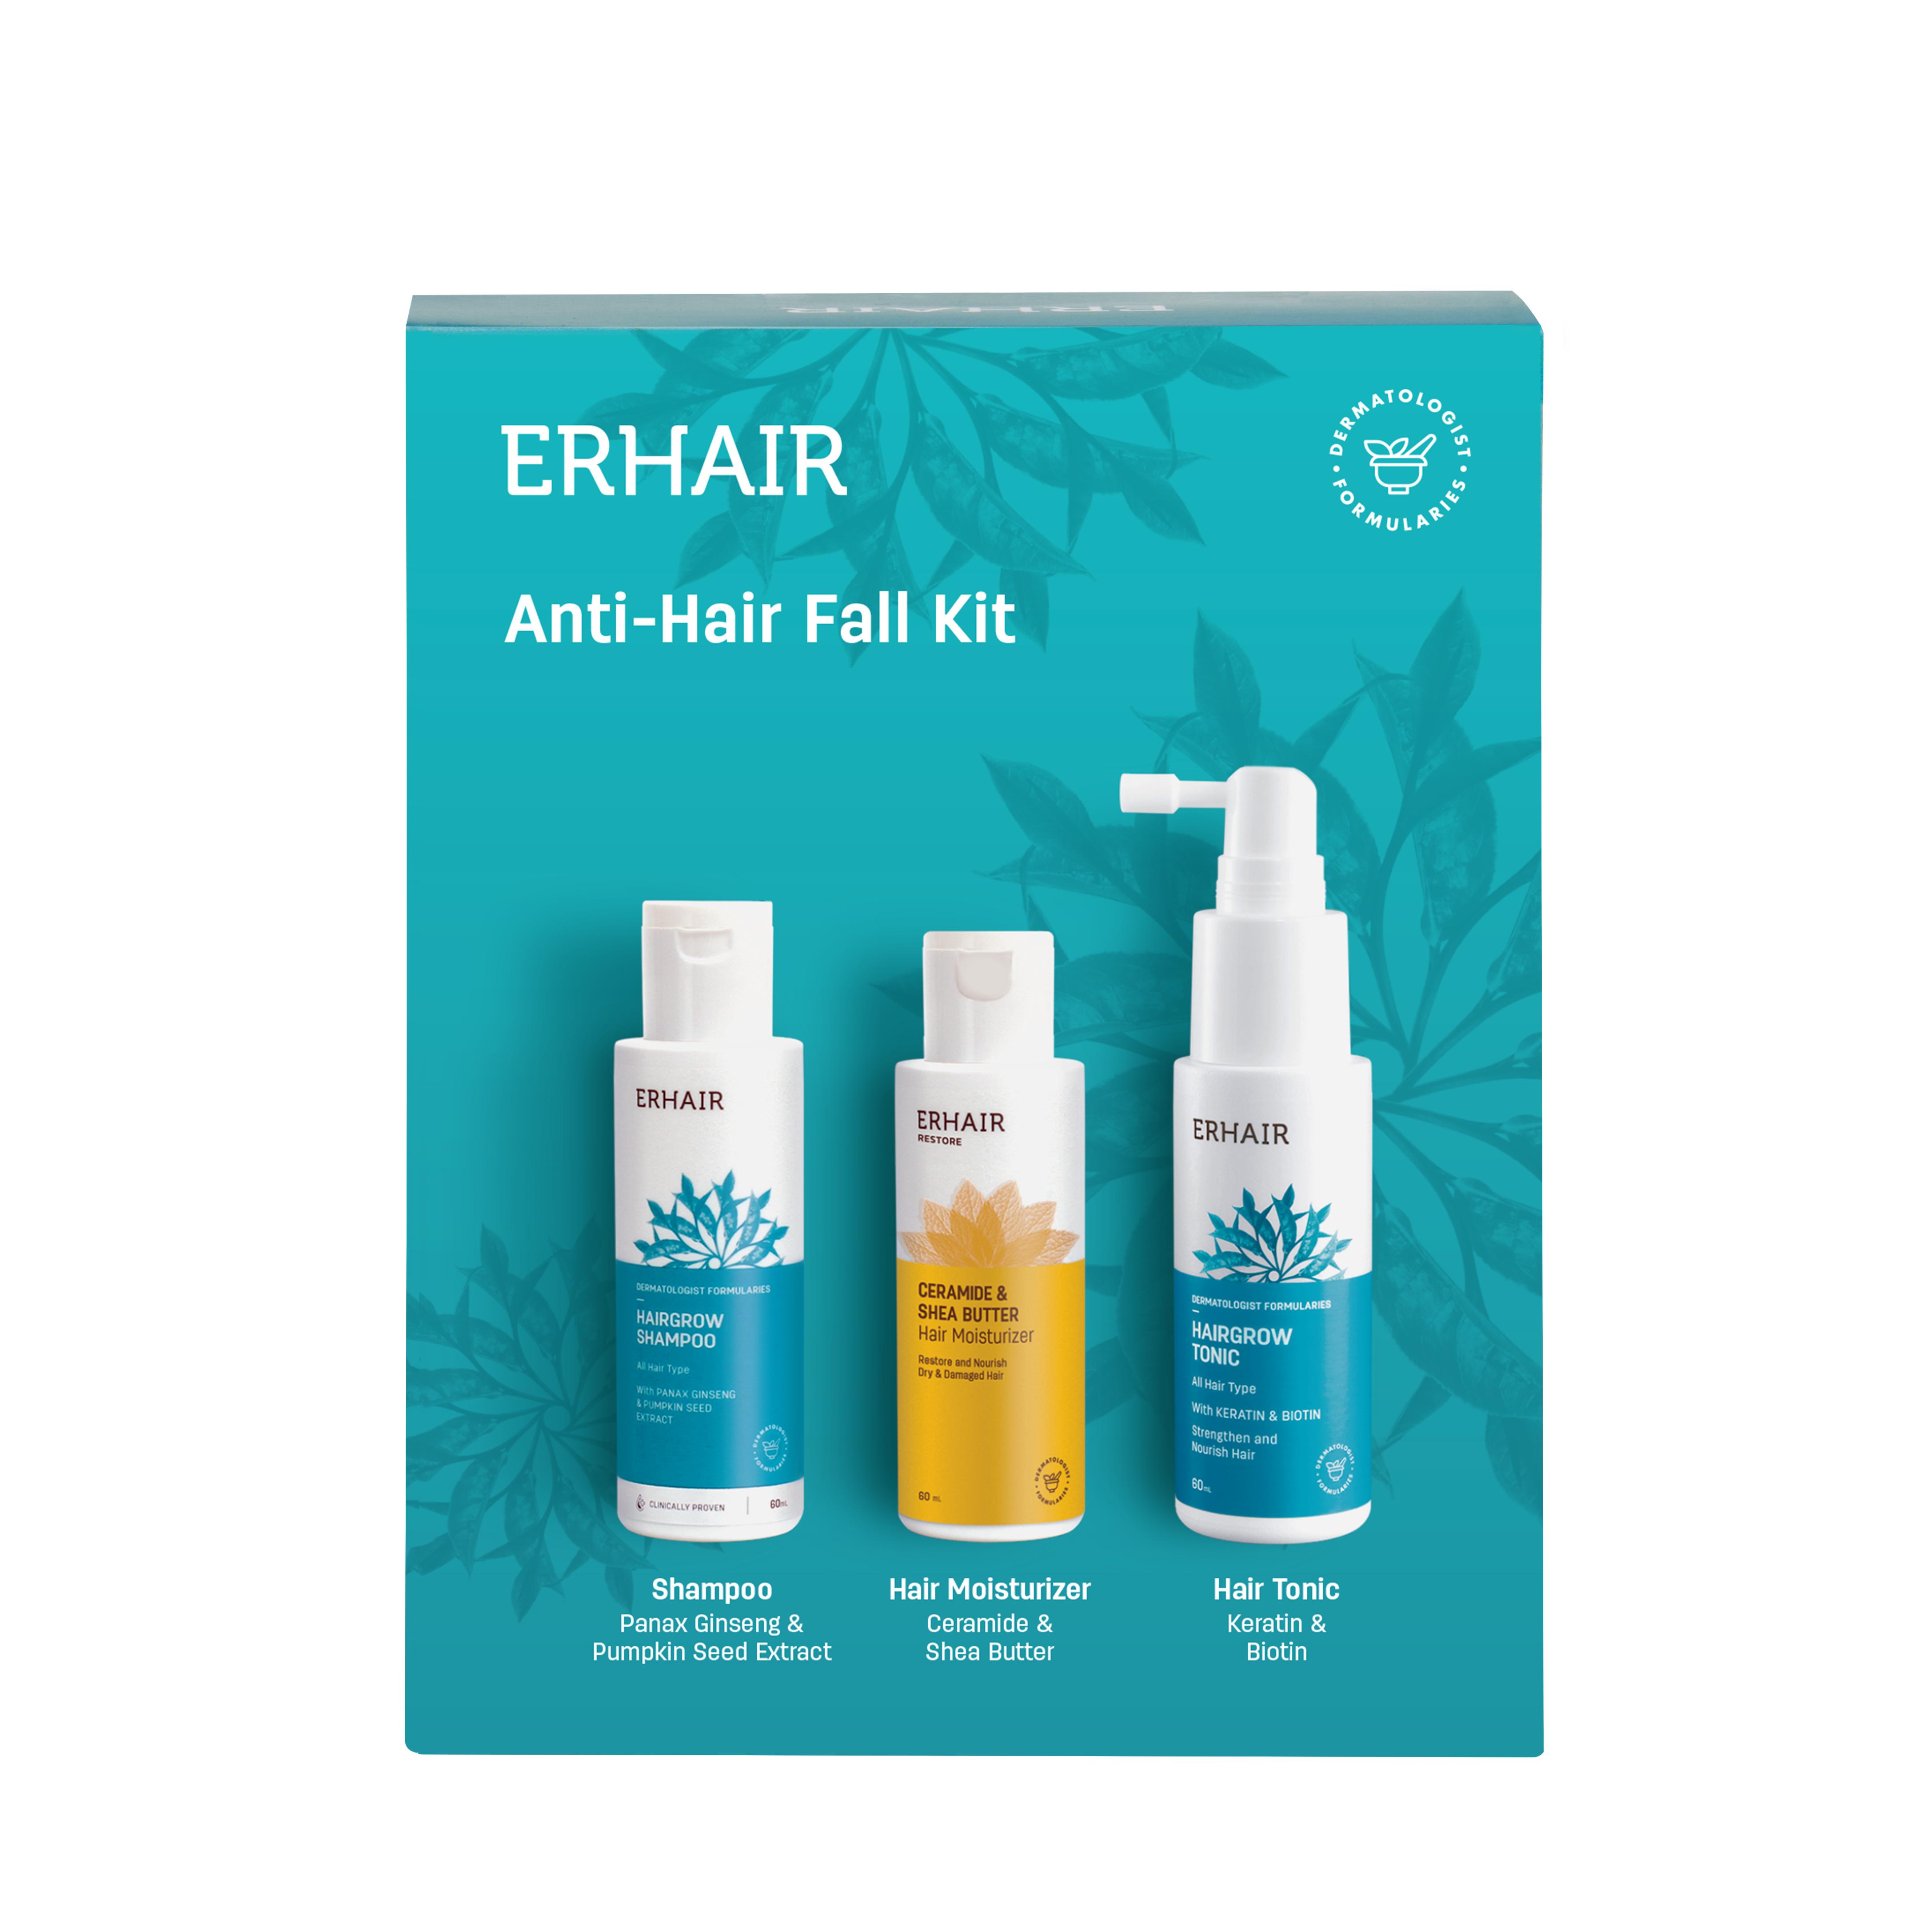 Anti-Hair Fall Kit